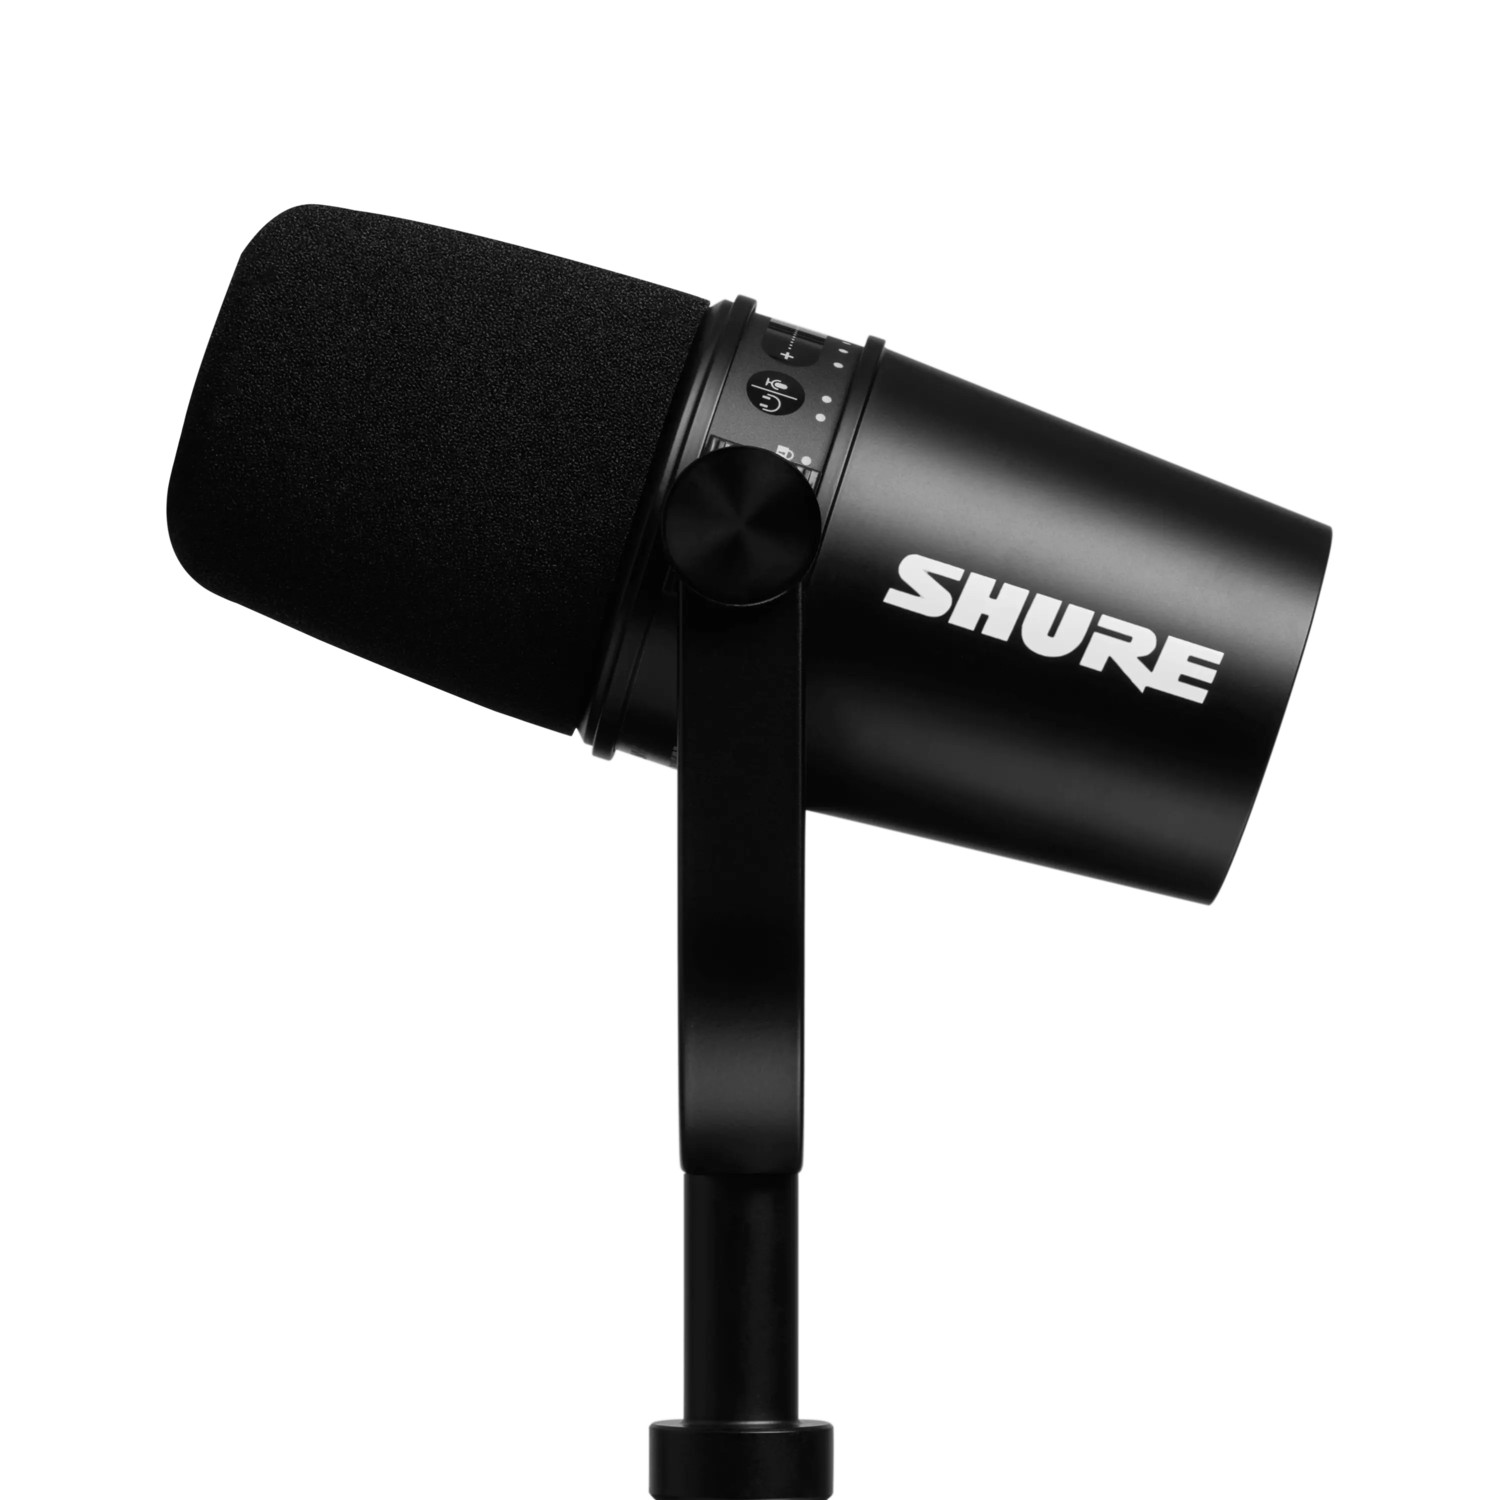 SHURE-MV7-Podcast-KIT-mit-USB-und-XLR-Ausgangen-Farbe-schwarz-inklusive-Manfrotto-Desktop-Stativ-Demoware